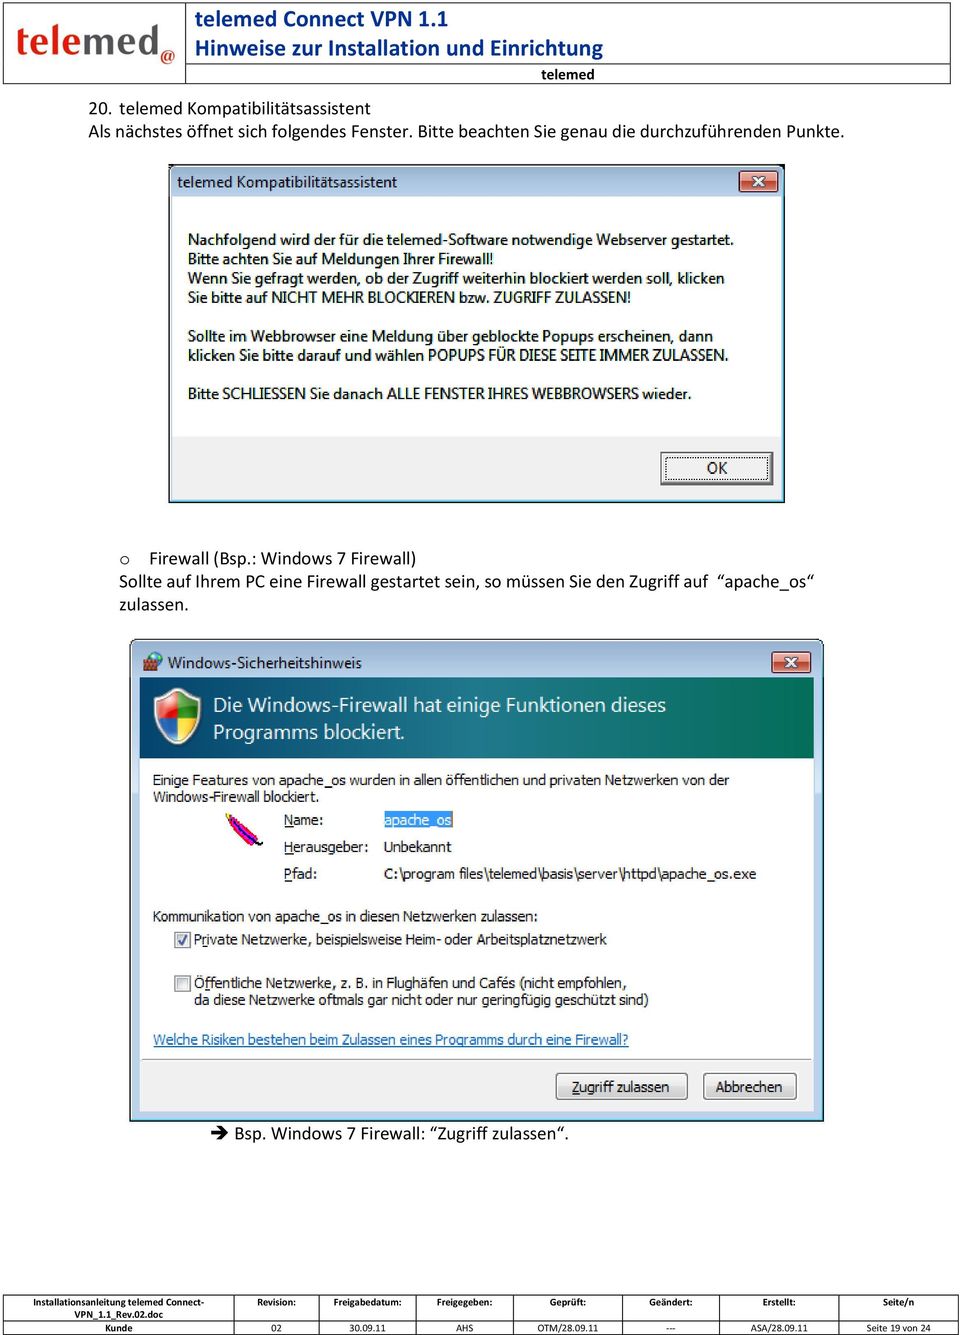 : Windows 7 Firewall) Sollte auf Ihrem PC eine Firewall gestartet sein, so müssen Sie den Zugriff